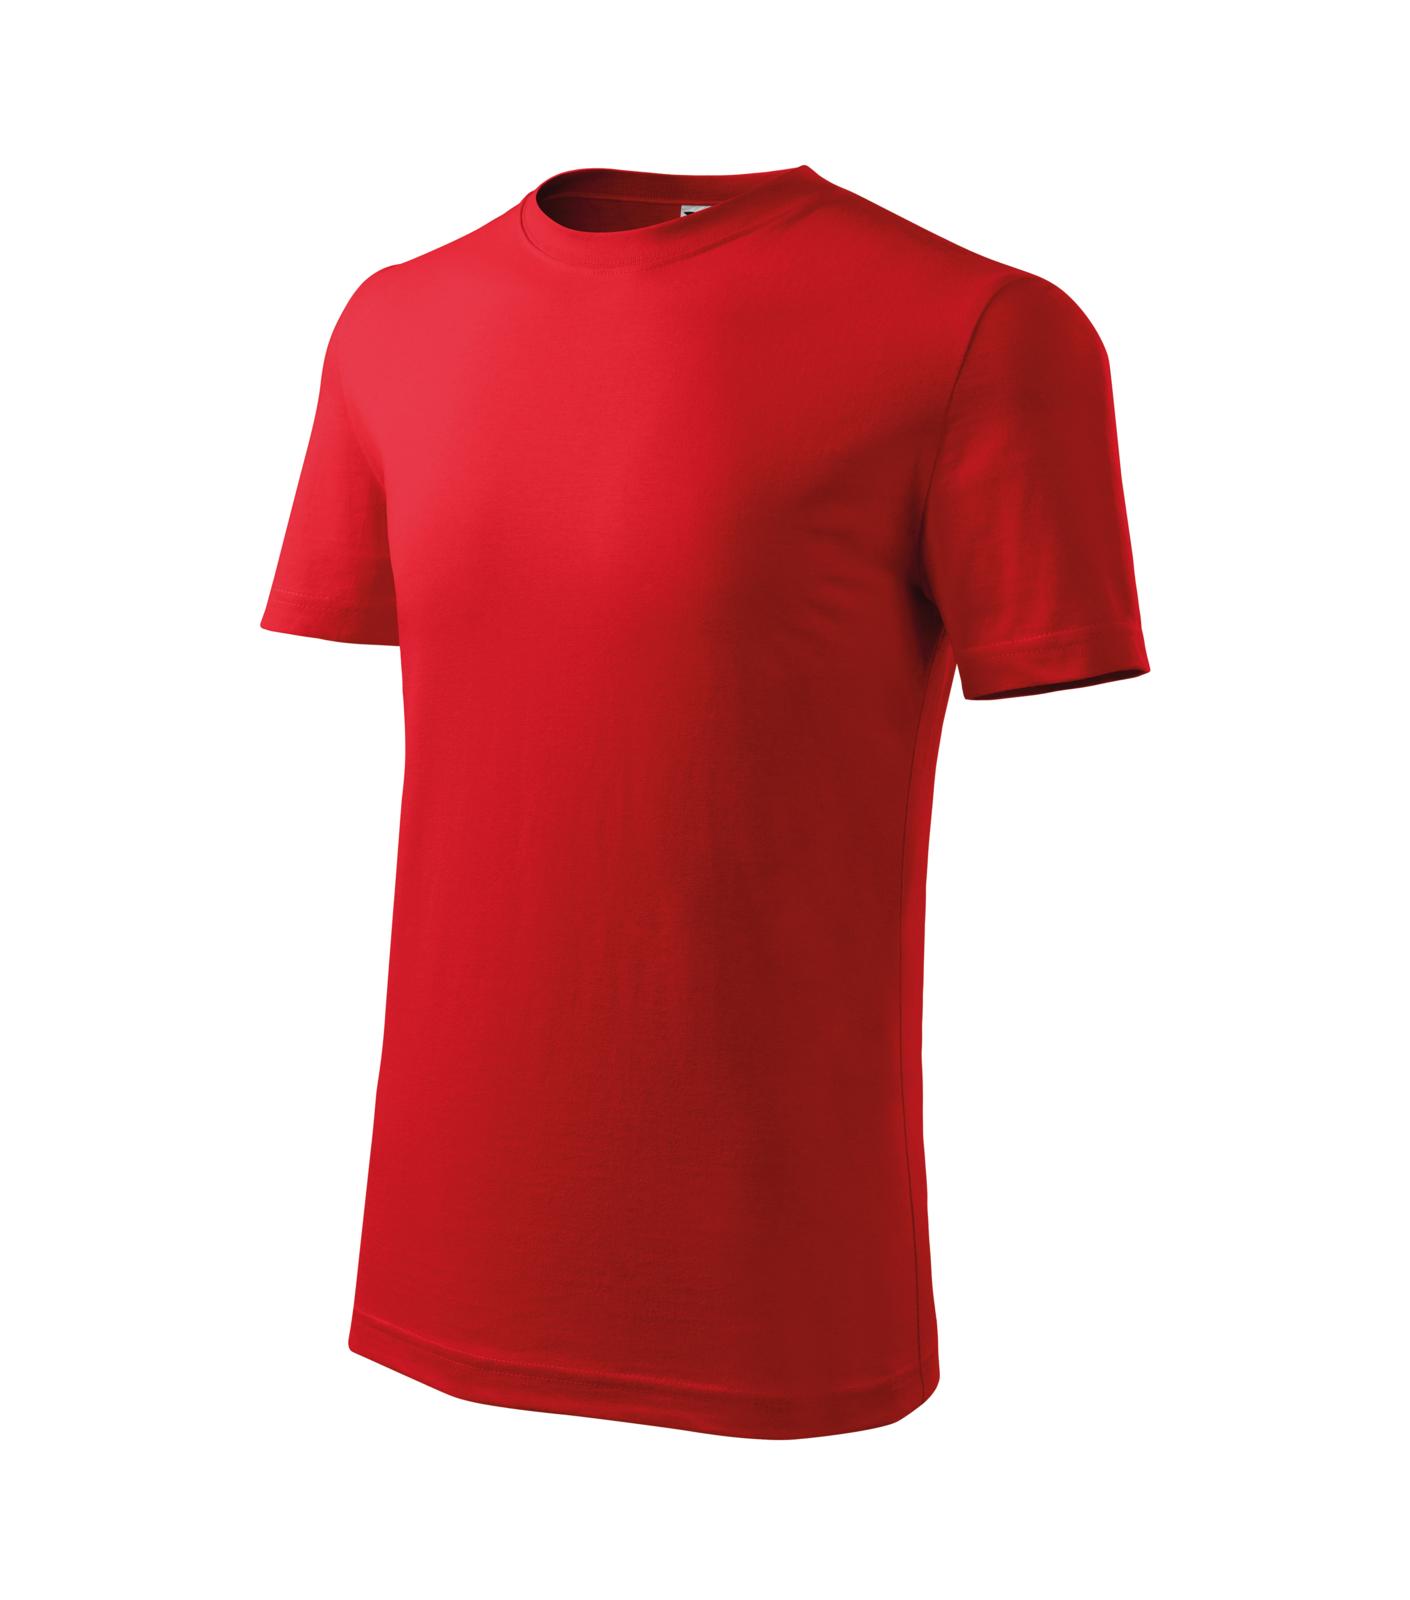 Classic New Tričko dětské Barva: červená, Velikost: 110 cm/4 roky